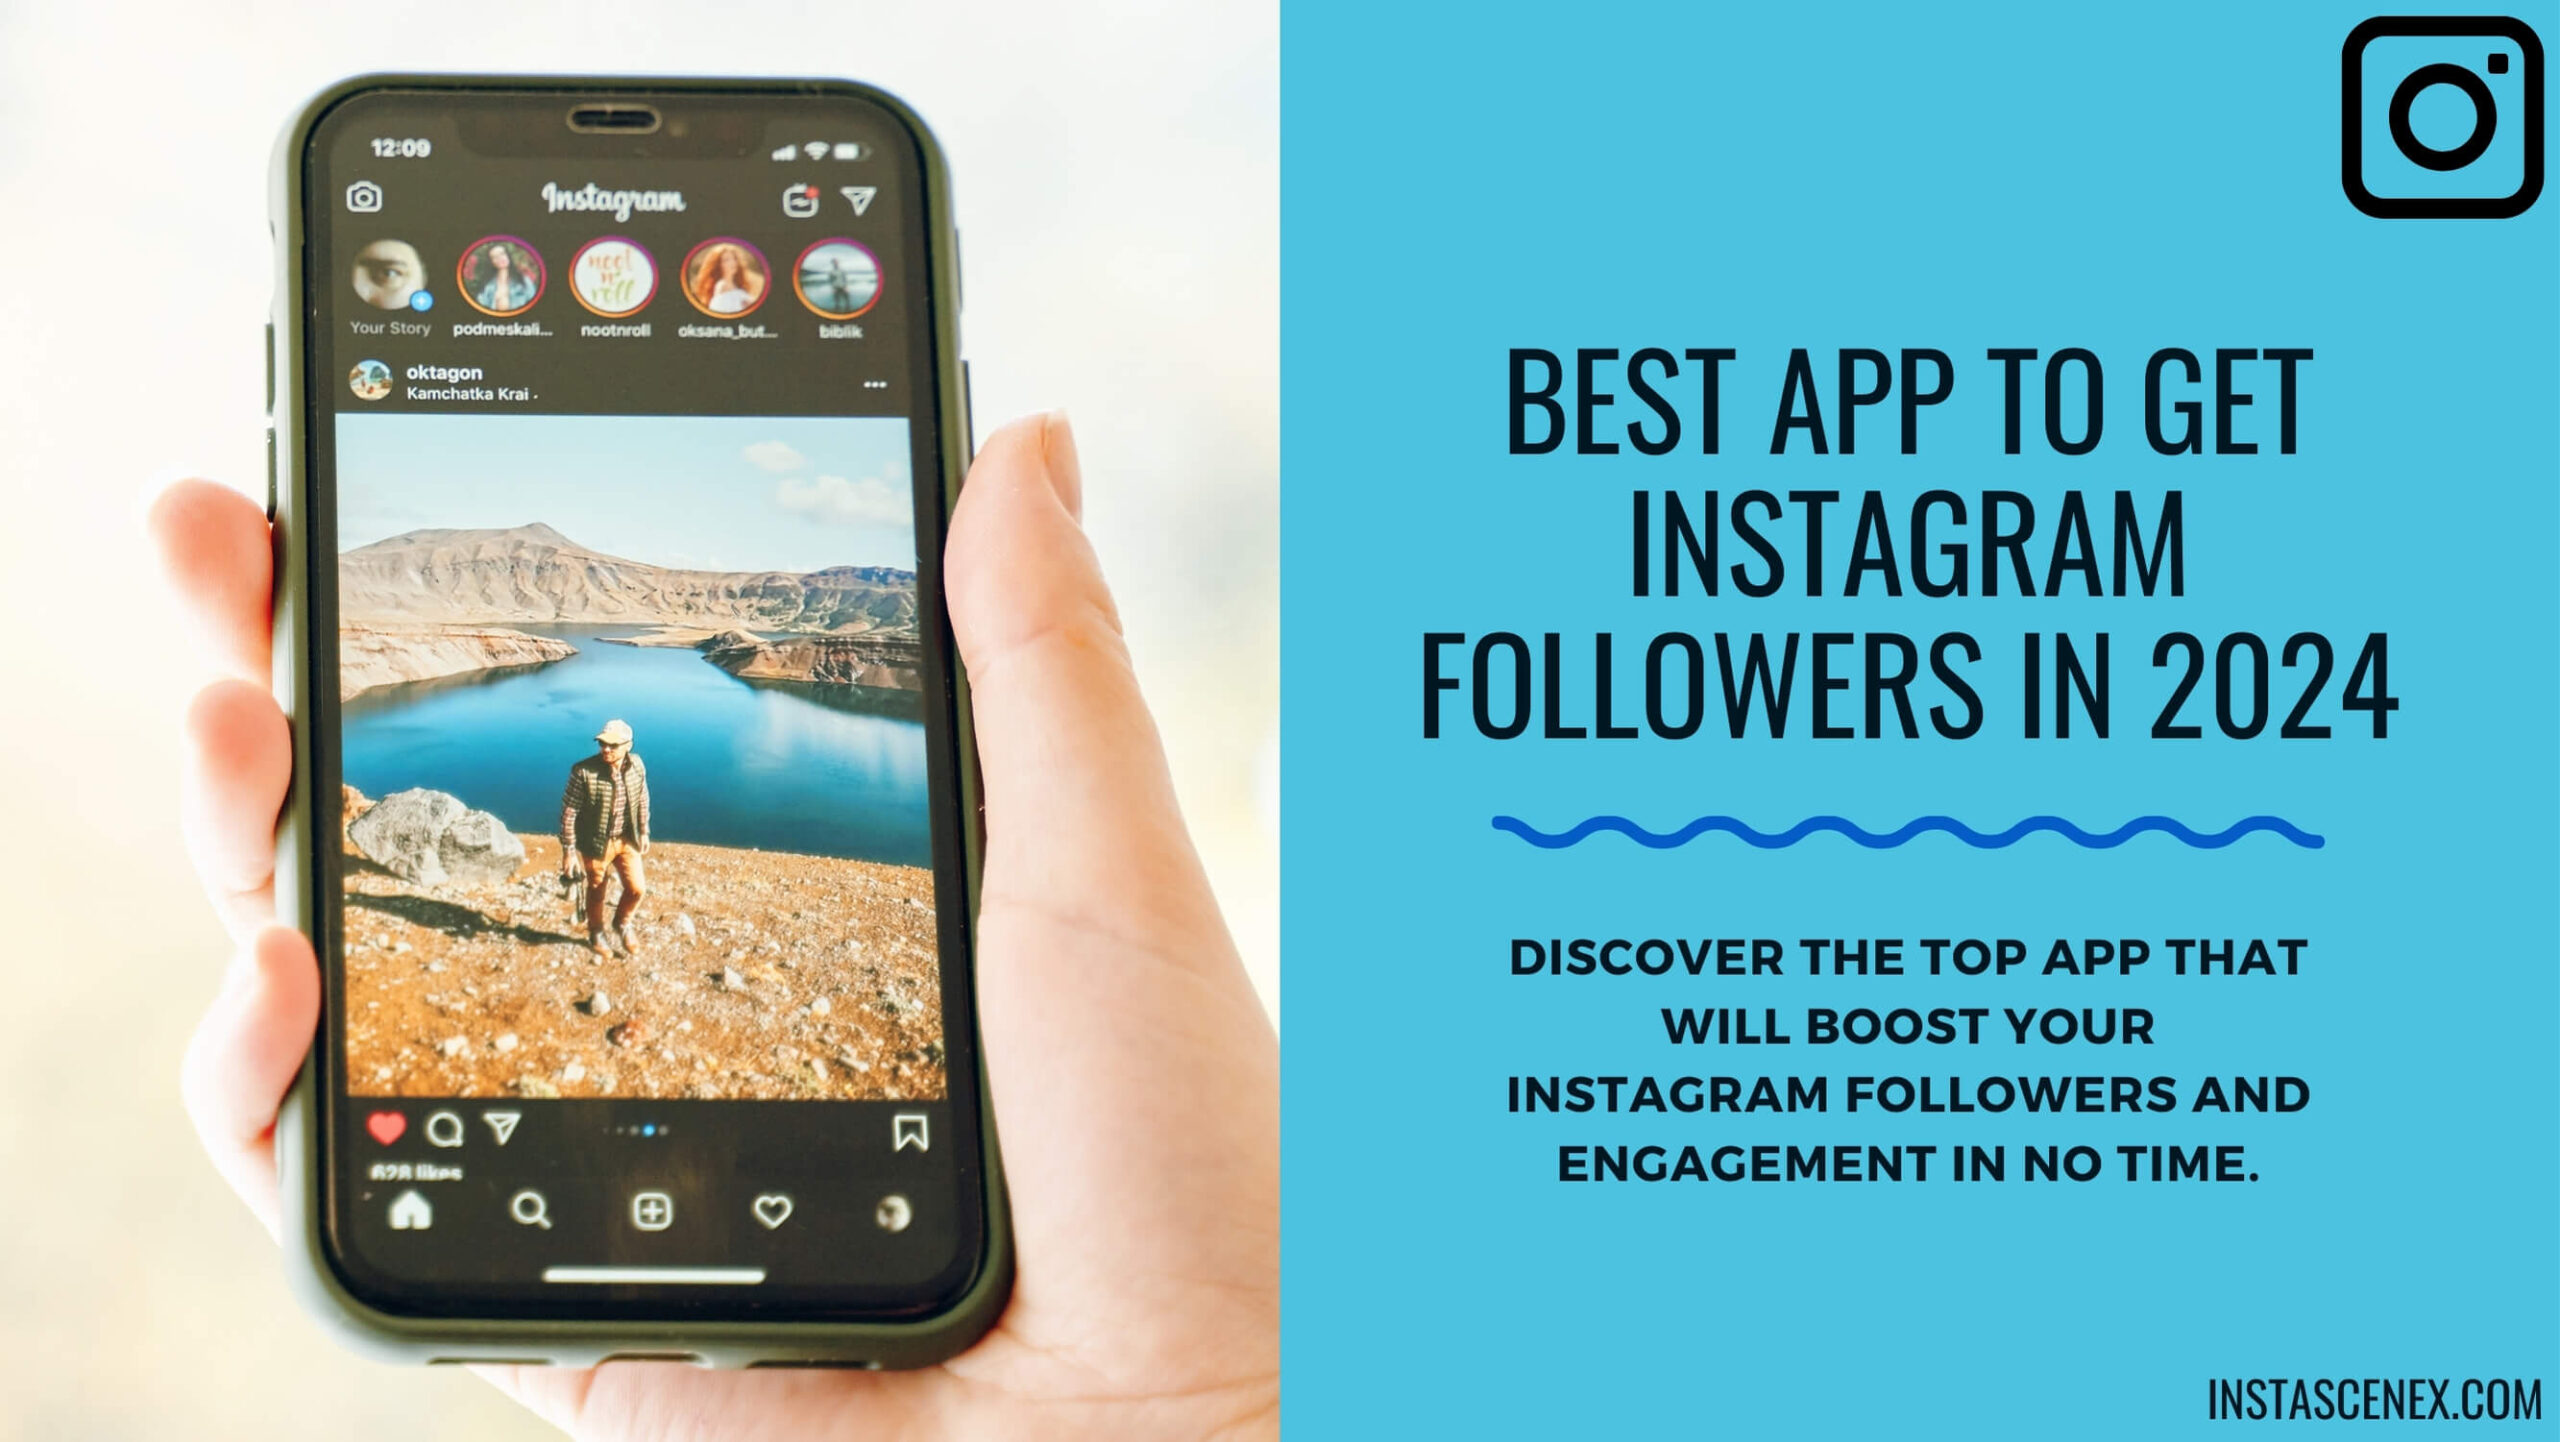 Best App to Get Instagram Followers in 2024